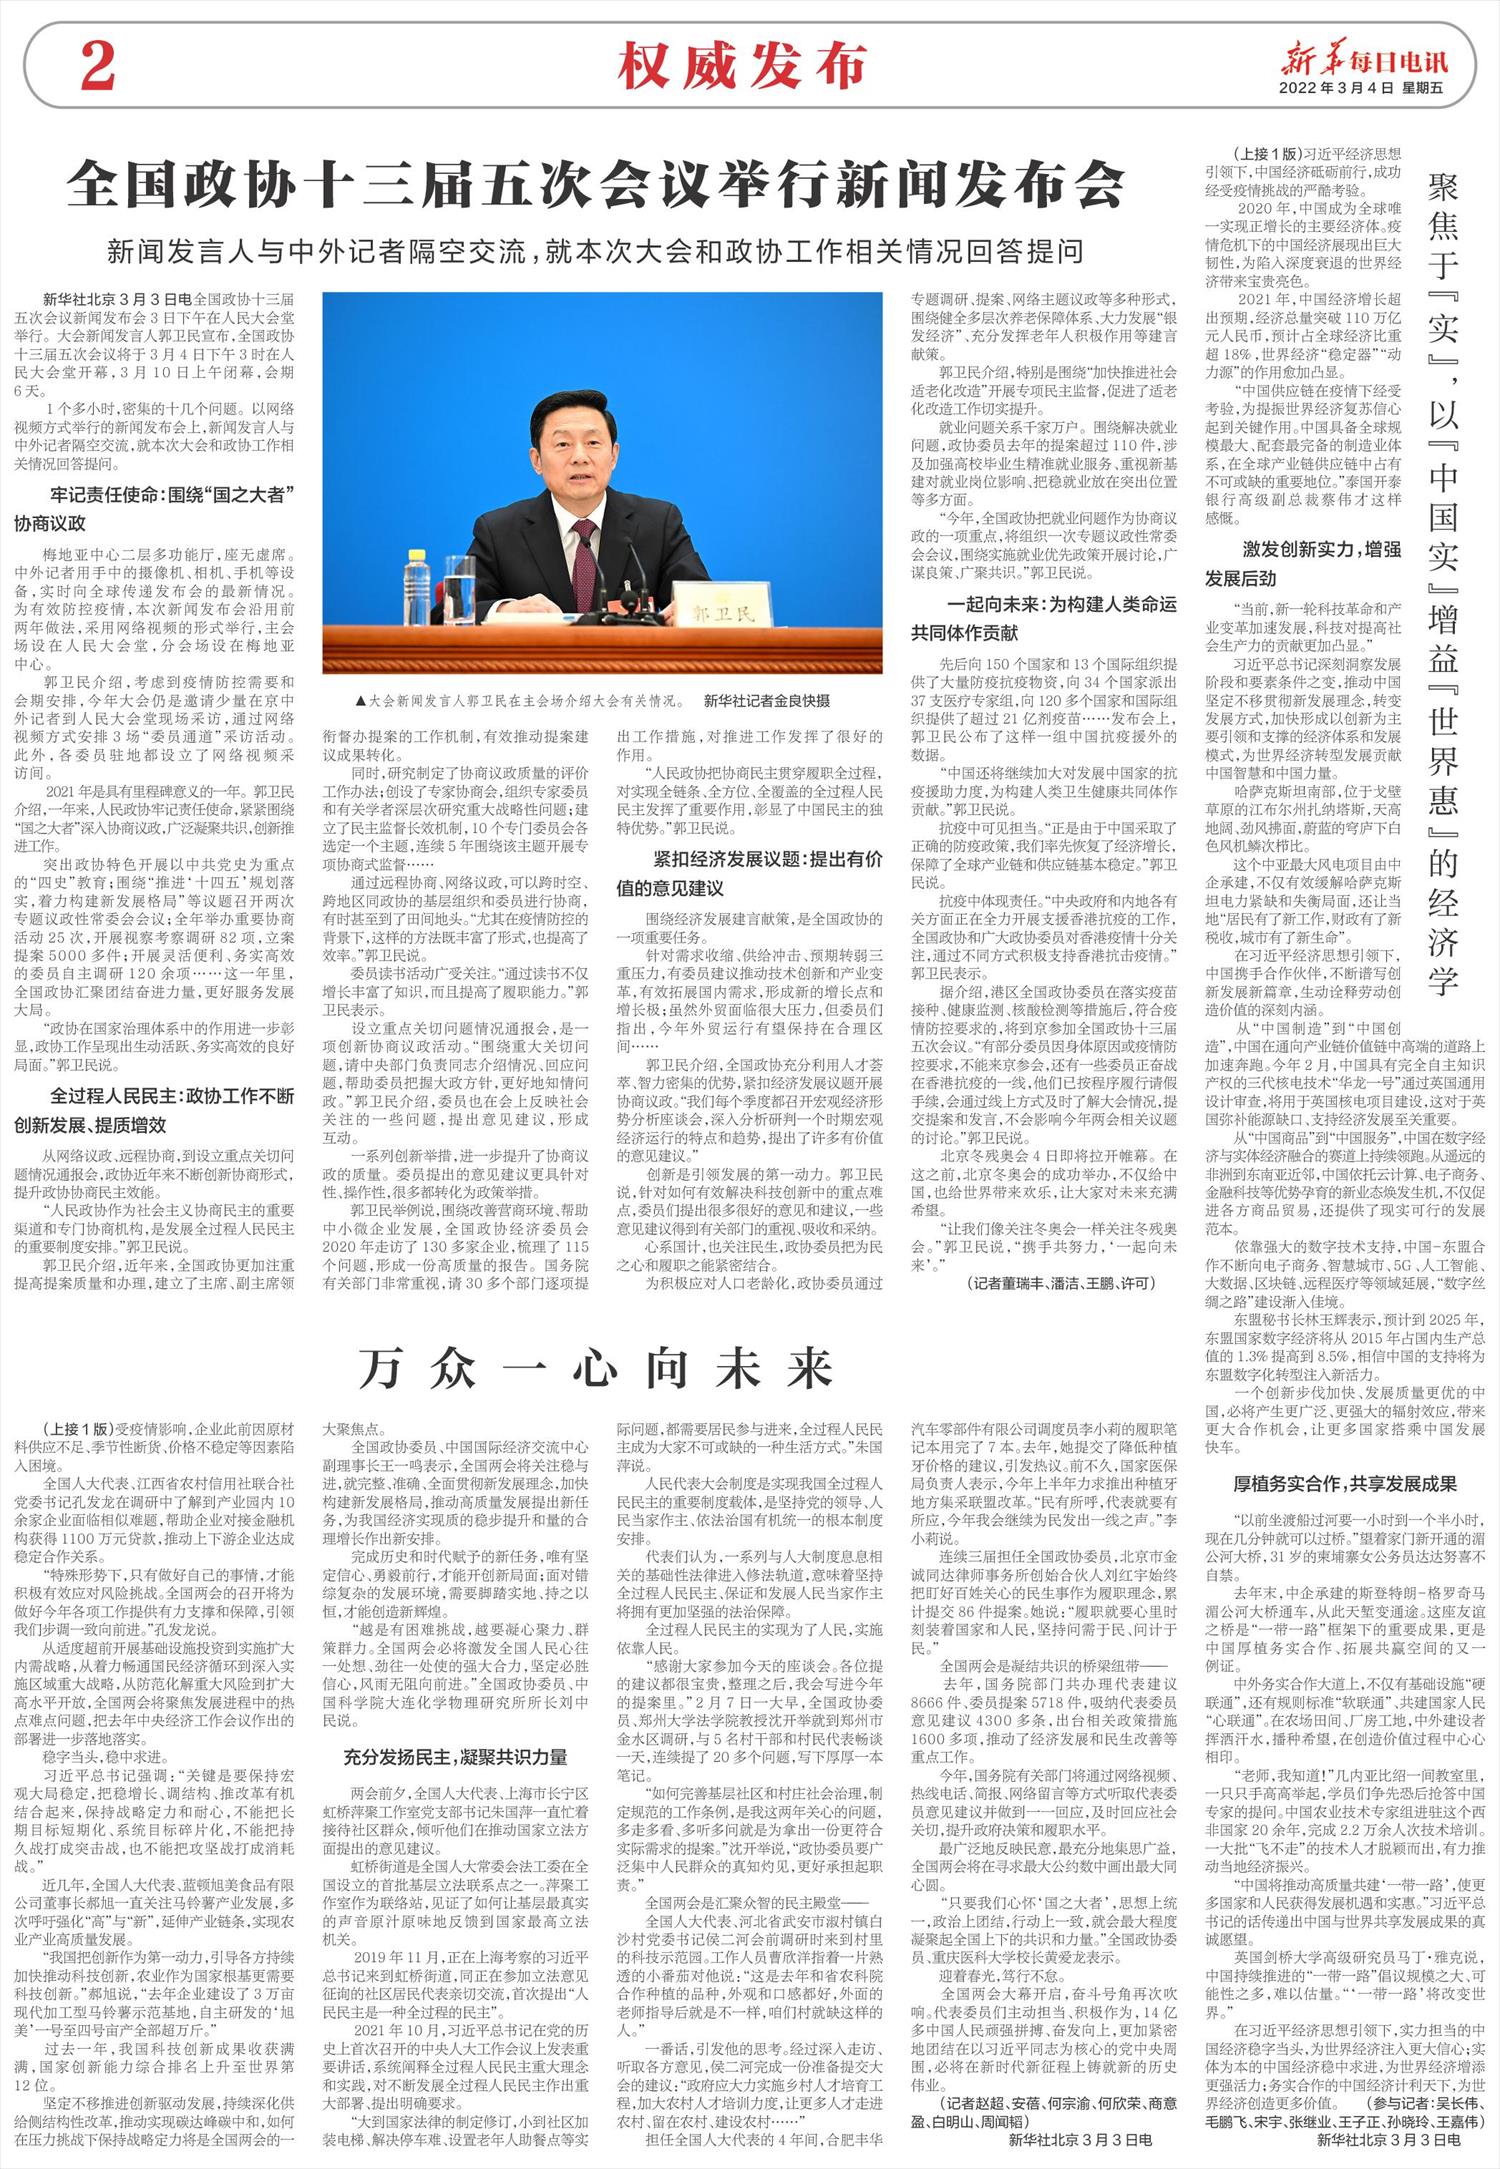 新华每日电讯-微报纸-2022年03月04日